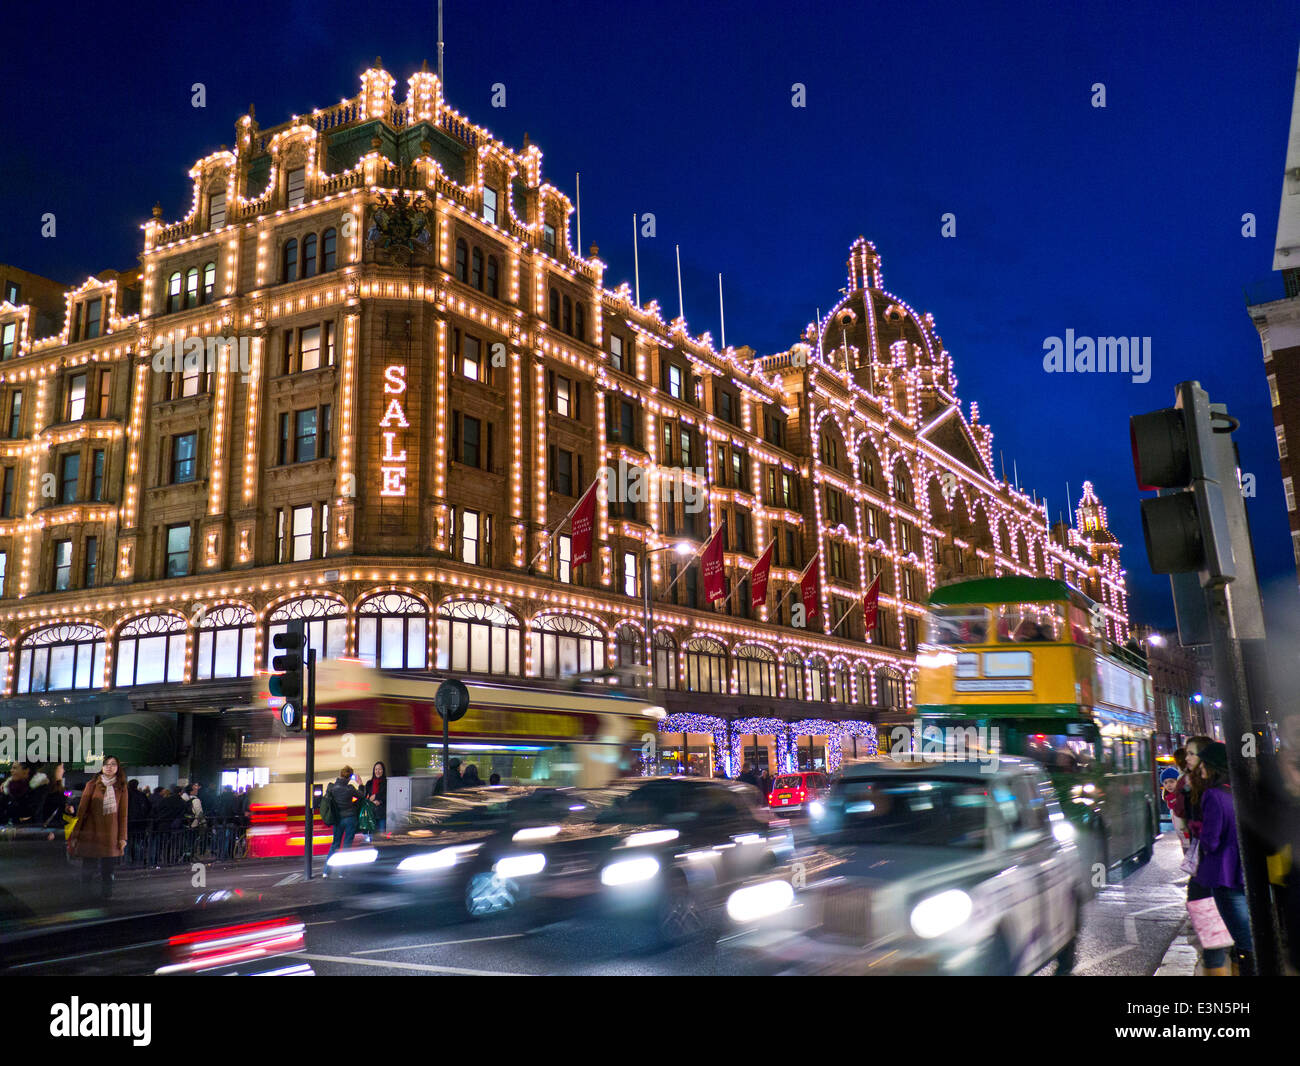 Das Kaufhaus Harrods in der Abenddämmerung mit beleuchteten "Sale" Schild Shopper Vintage-Tourbus und vorbeifahrenden Taxis Knightsbridge London SW1 Stockfoto